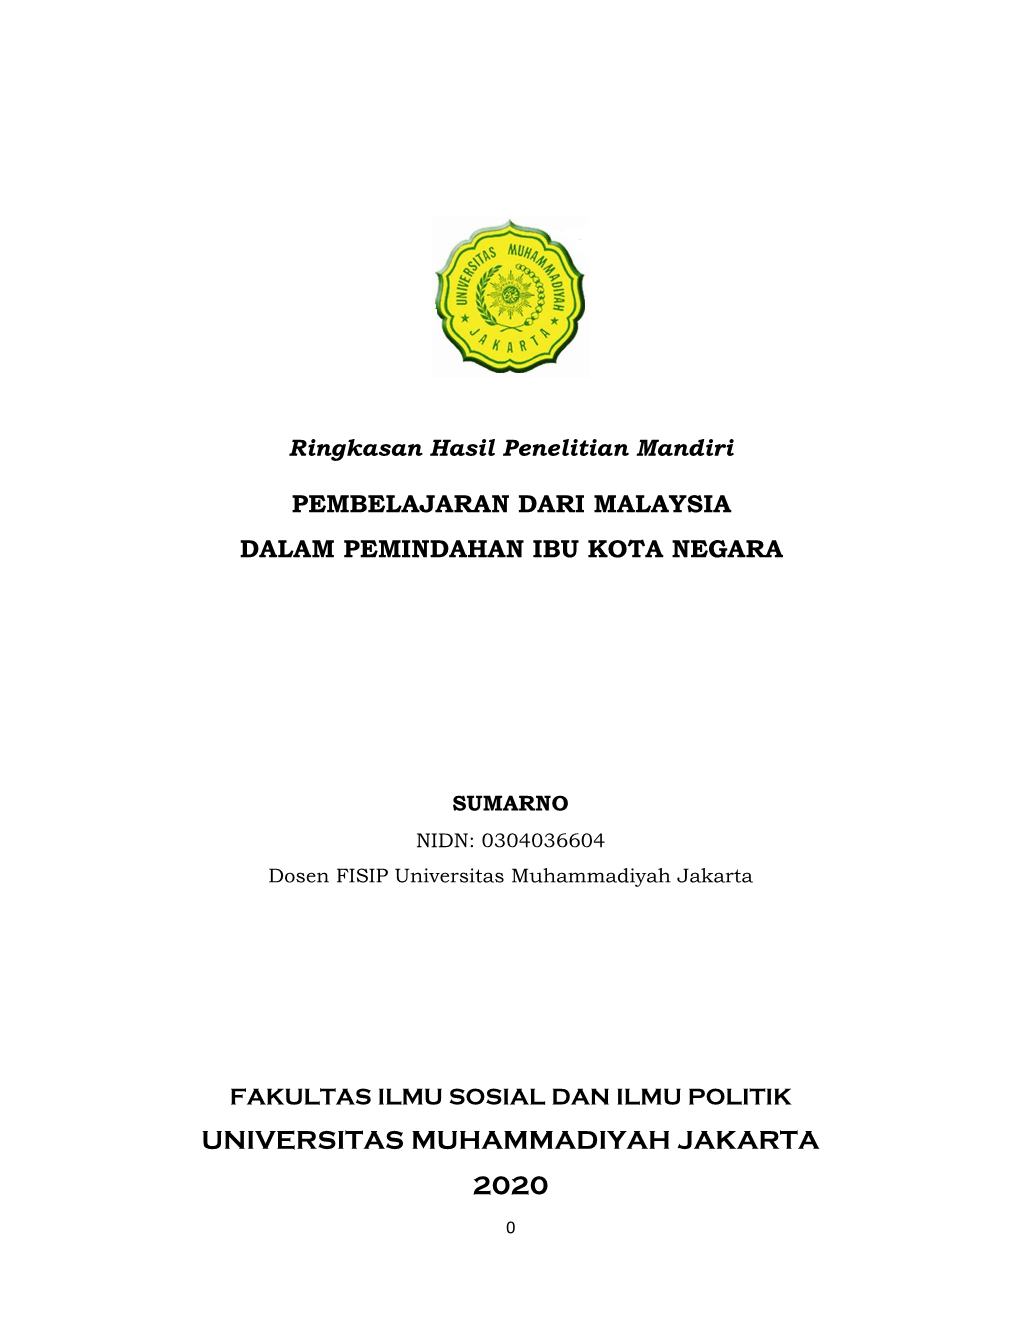 Universitas Muhammadiyah Jakarta 2020